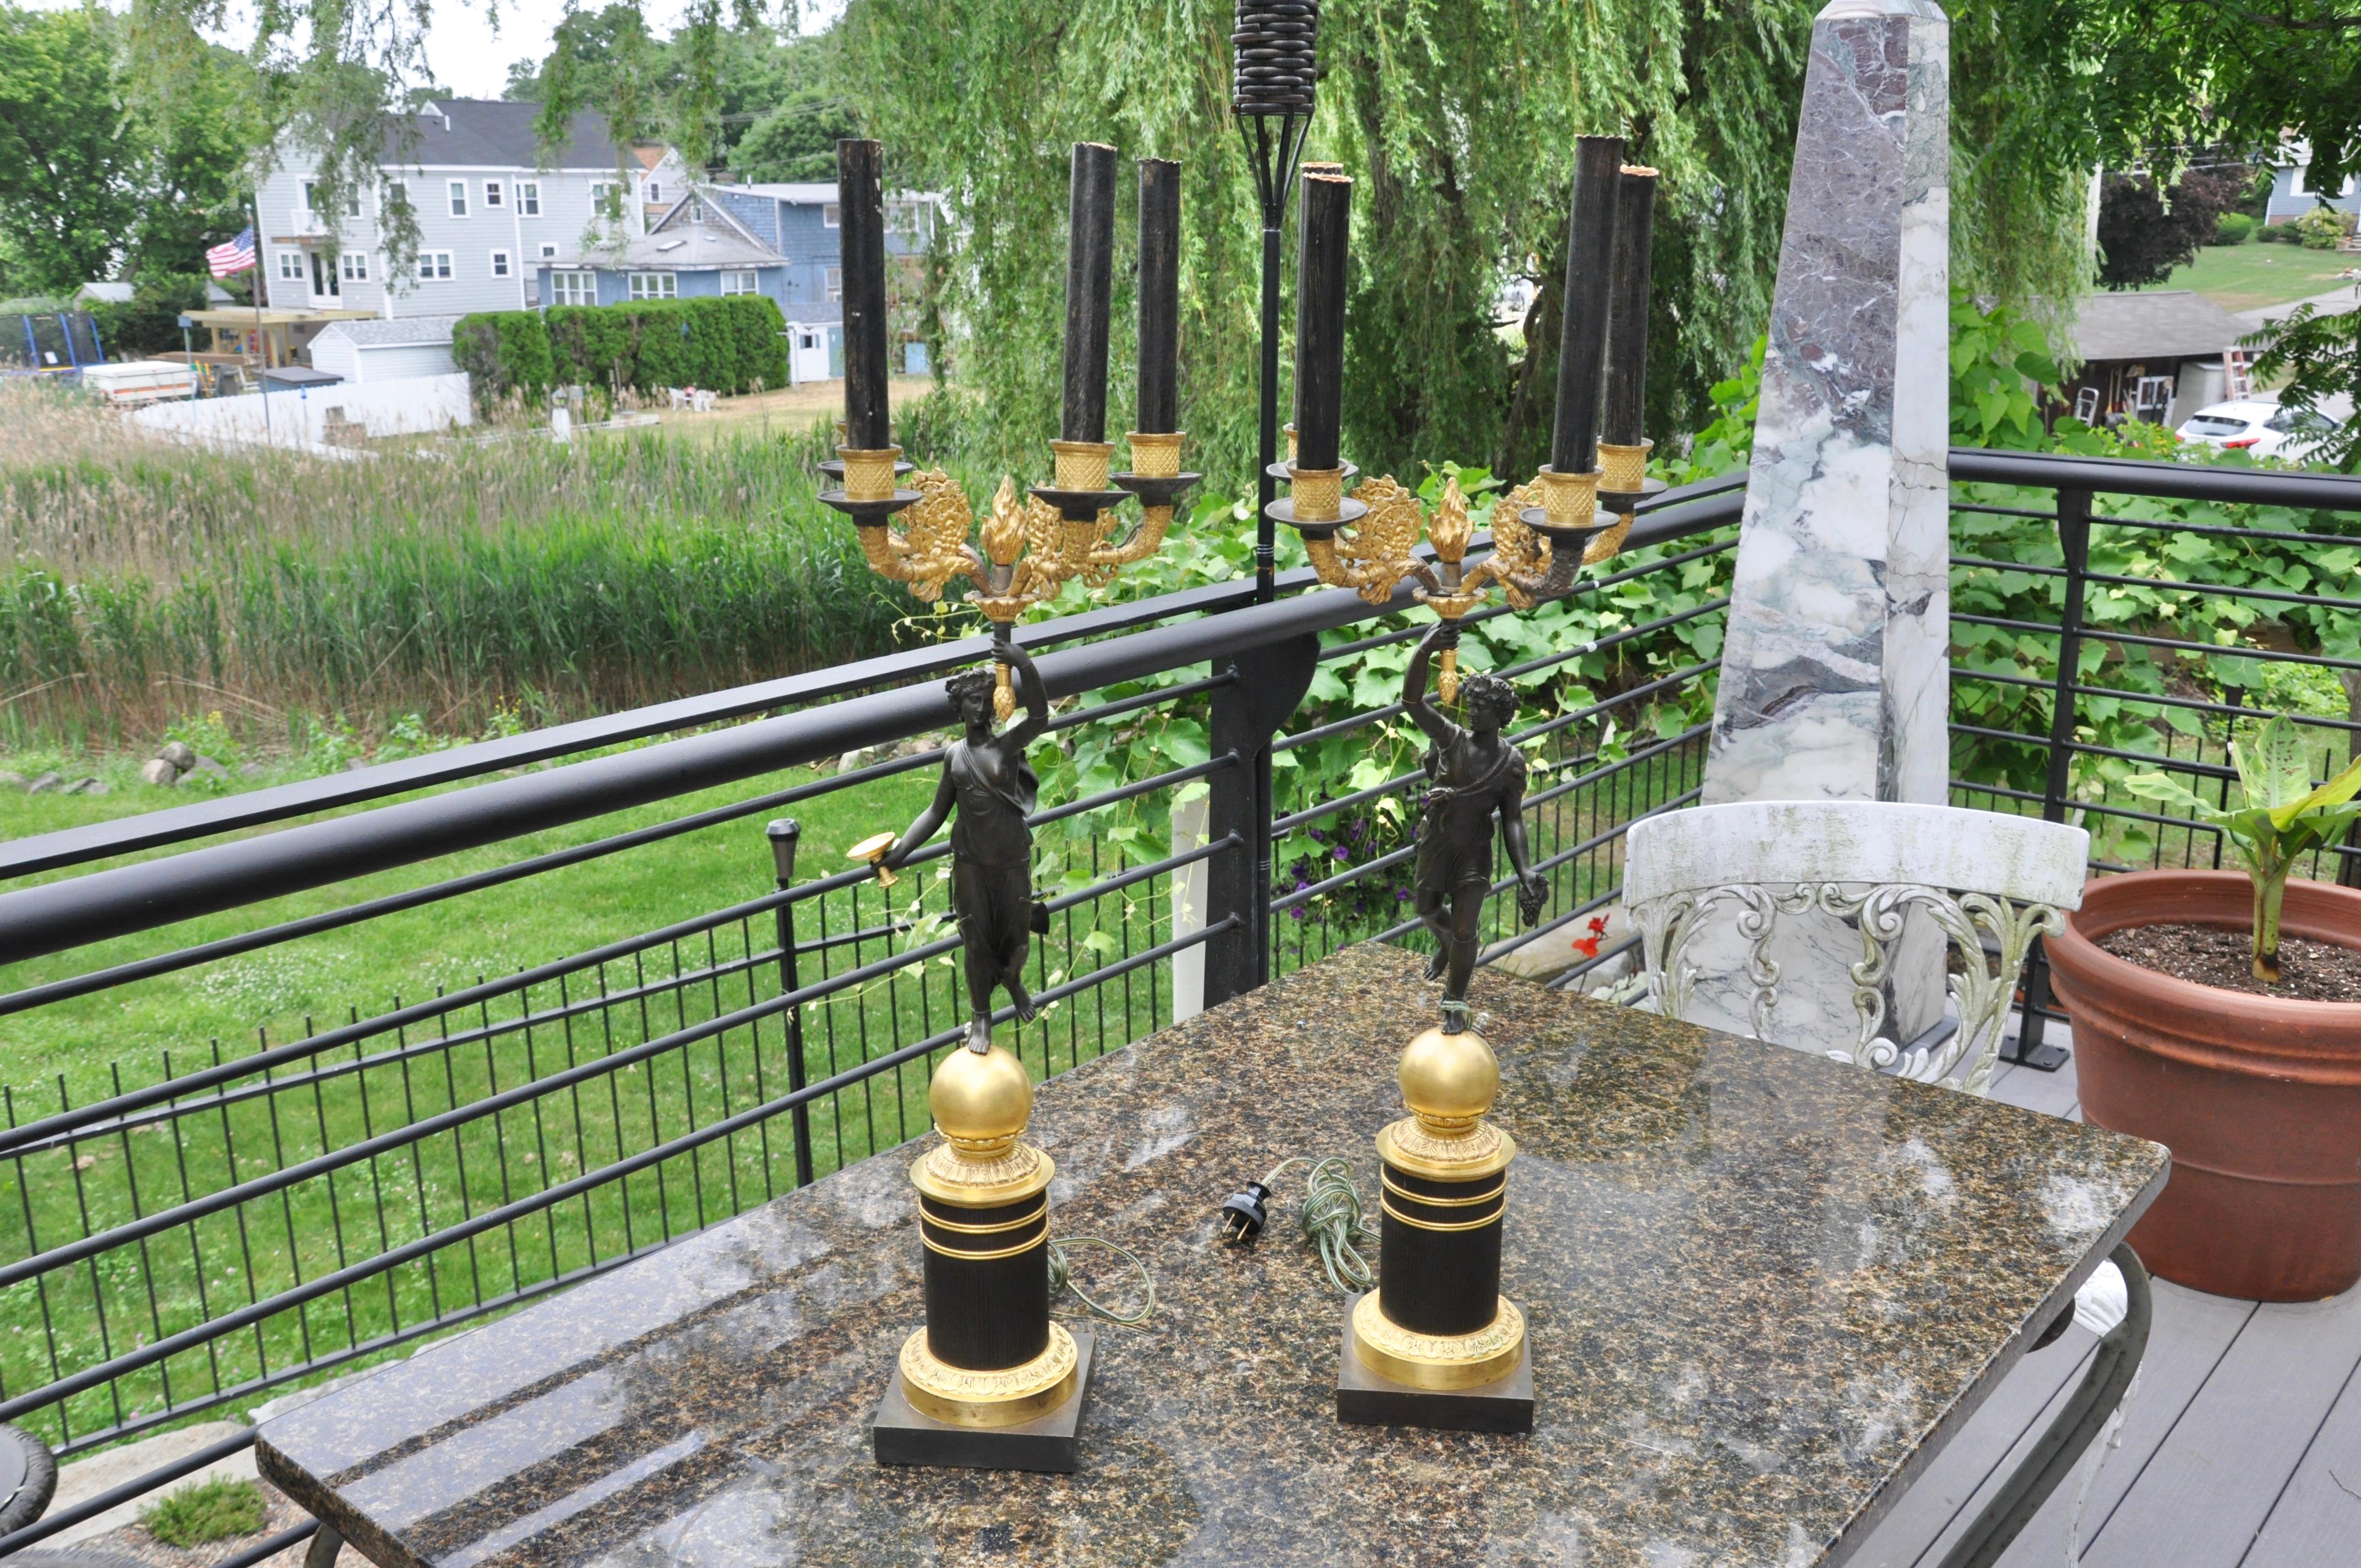 Paire de candélabres en bronze doré et patiné du 19e siècle, utilisés comme lampes. Baccantes figuratifs tenant des torchères. Période de l'Empire ou de Charles X. Bonne dorure au feu bruni et patine d'origine.